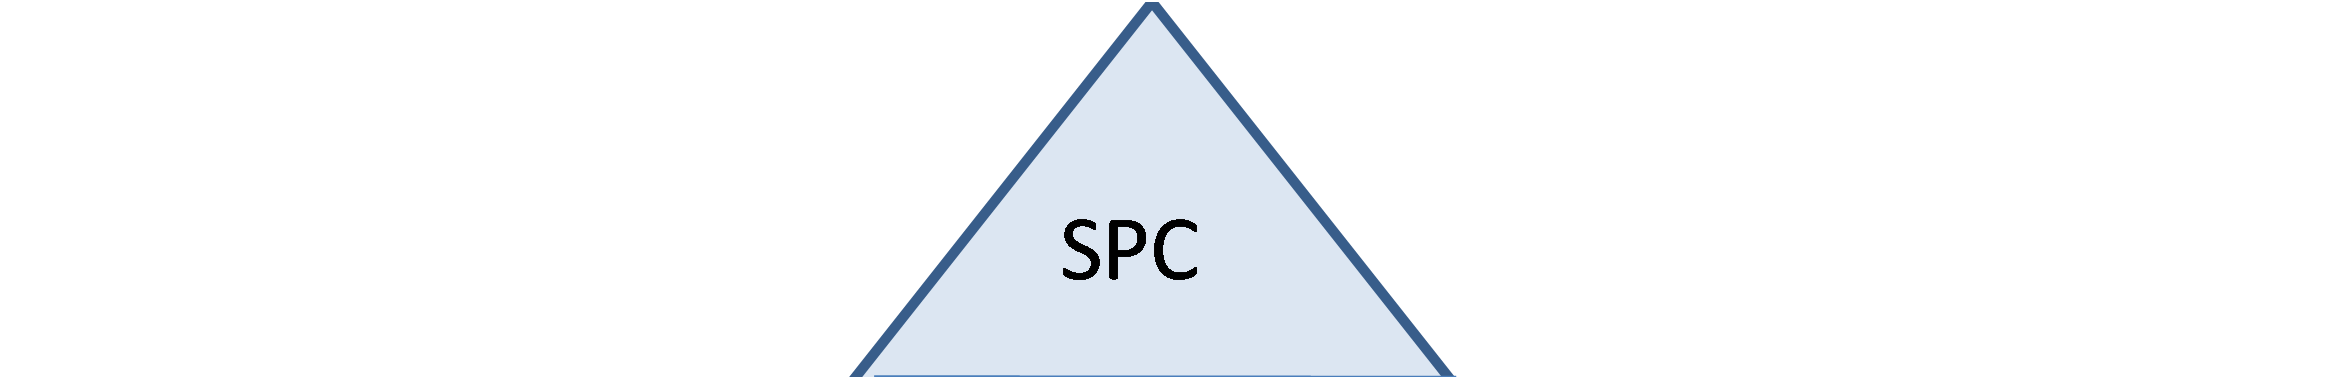 Minőségmenedzsment 208 67. ábra: SPC rendszer felépítése 17.